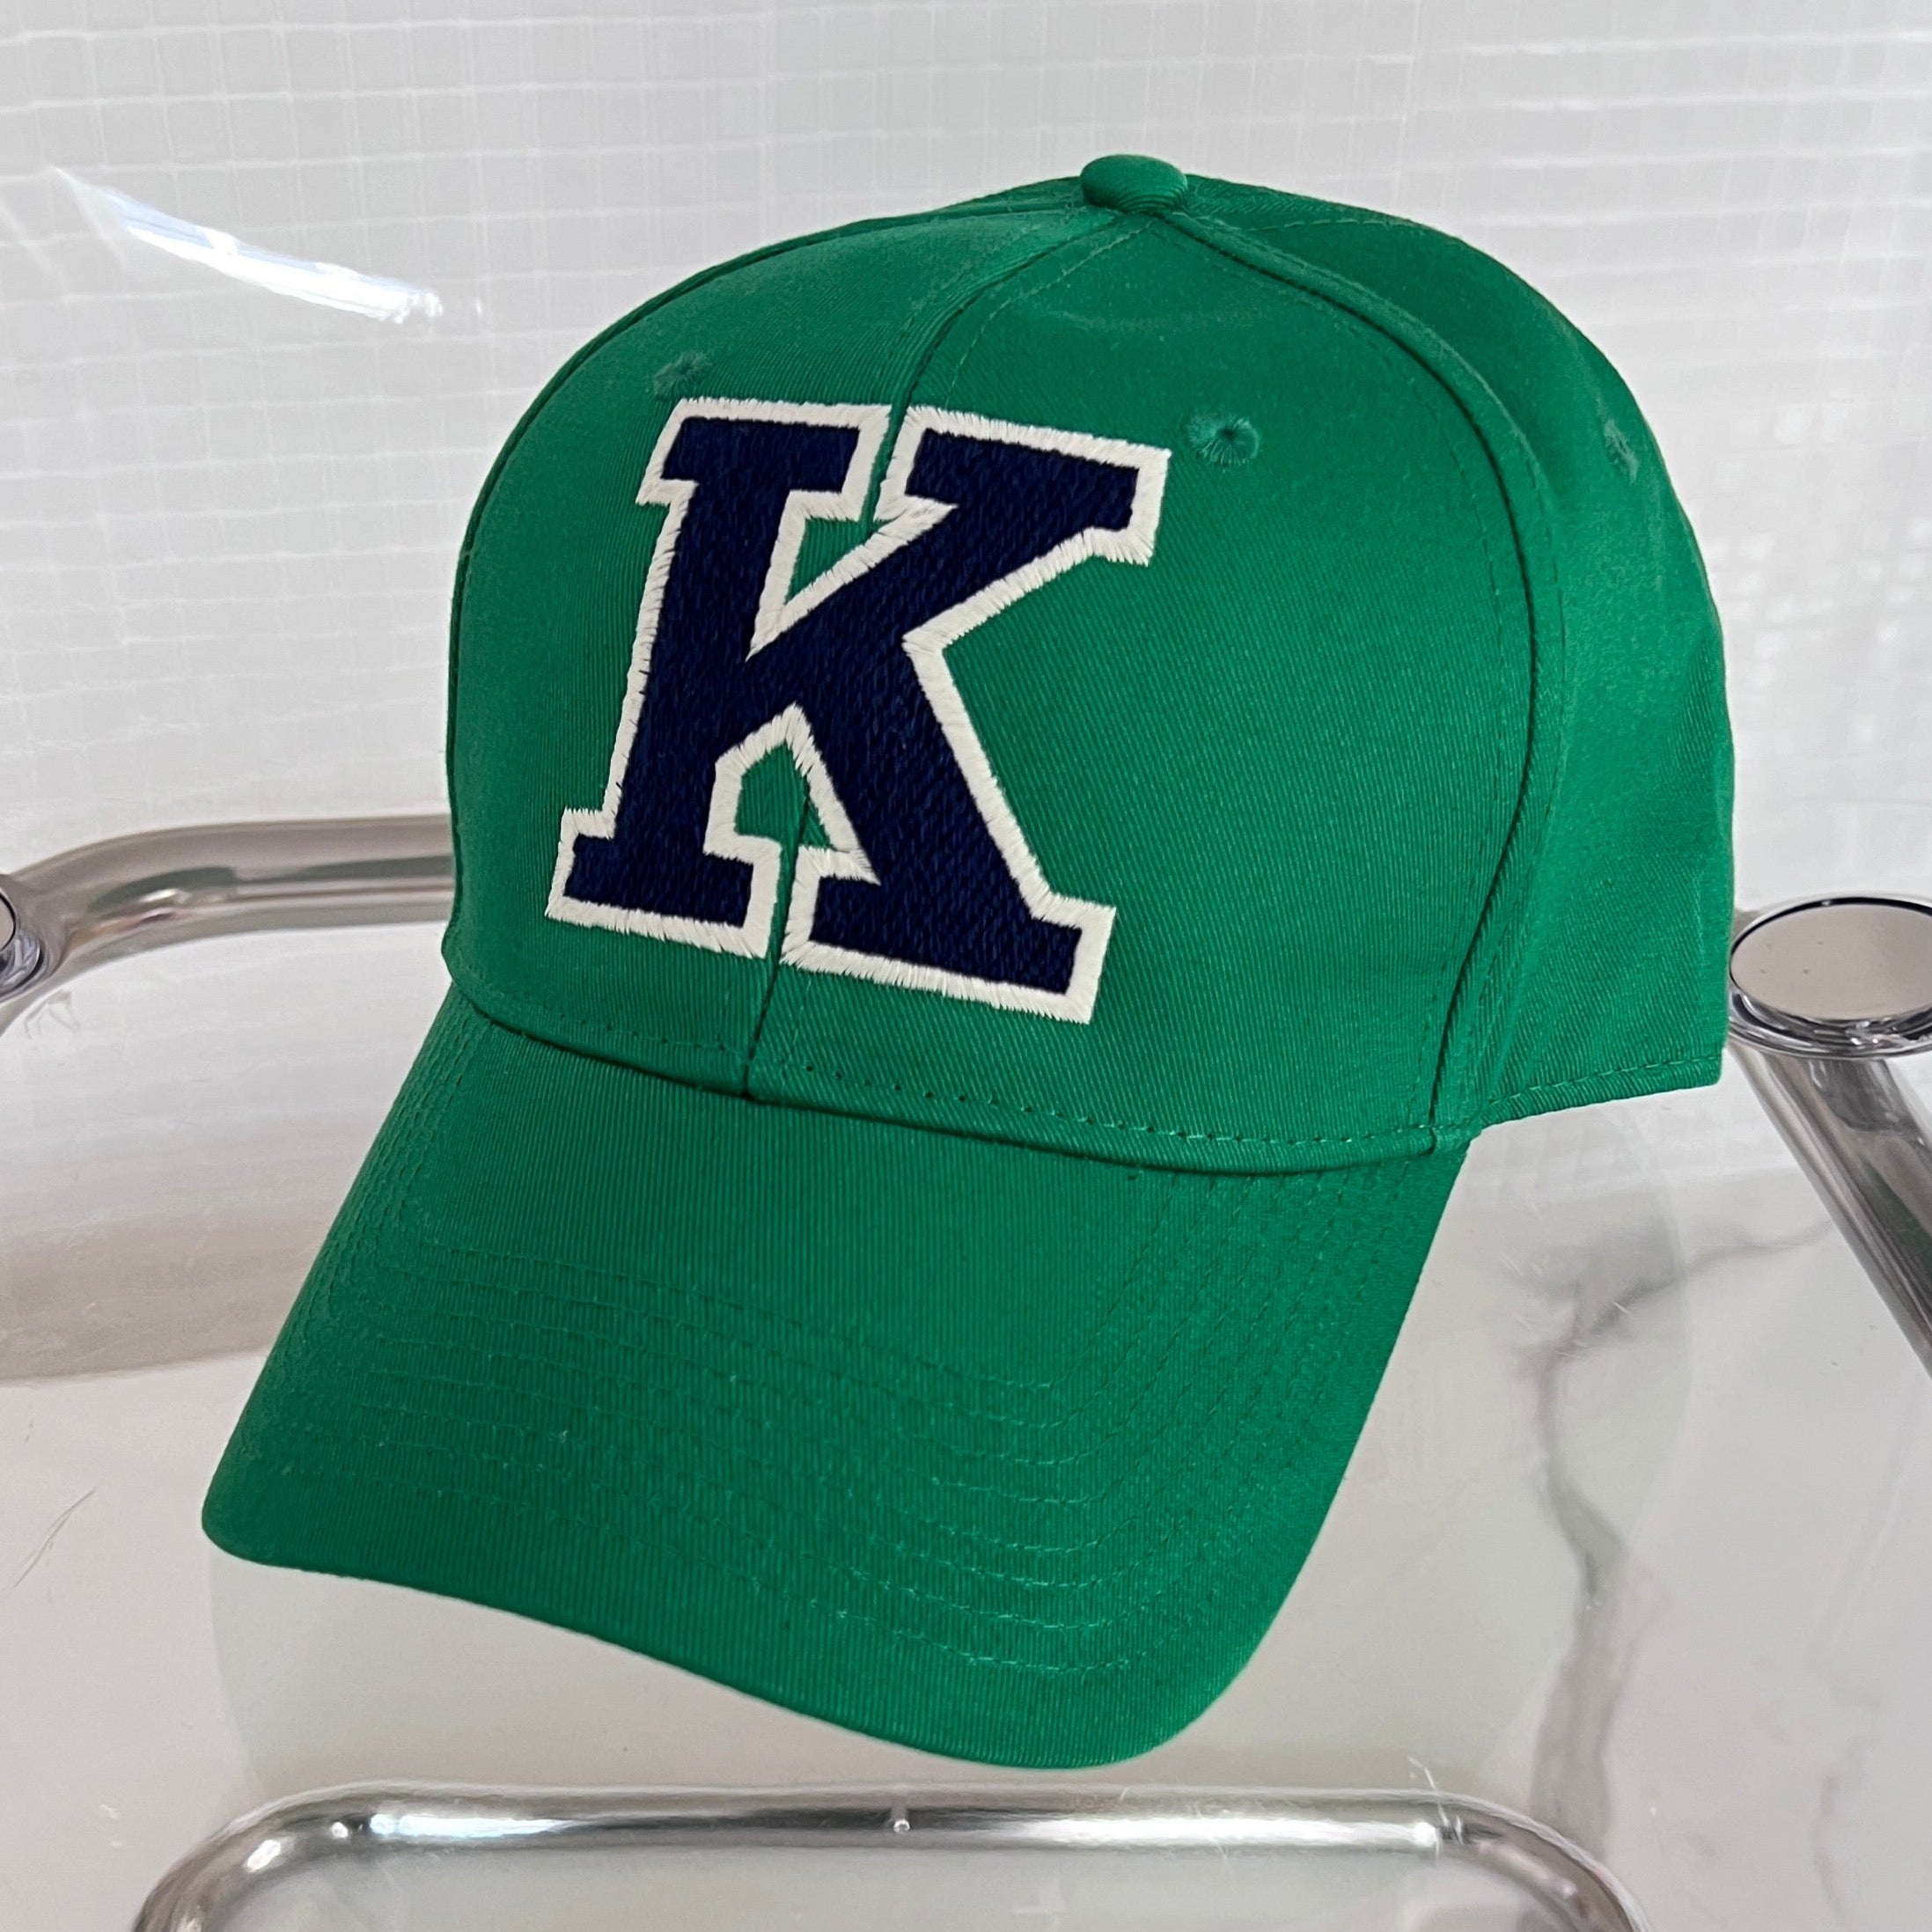 CAP K green/ navy